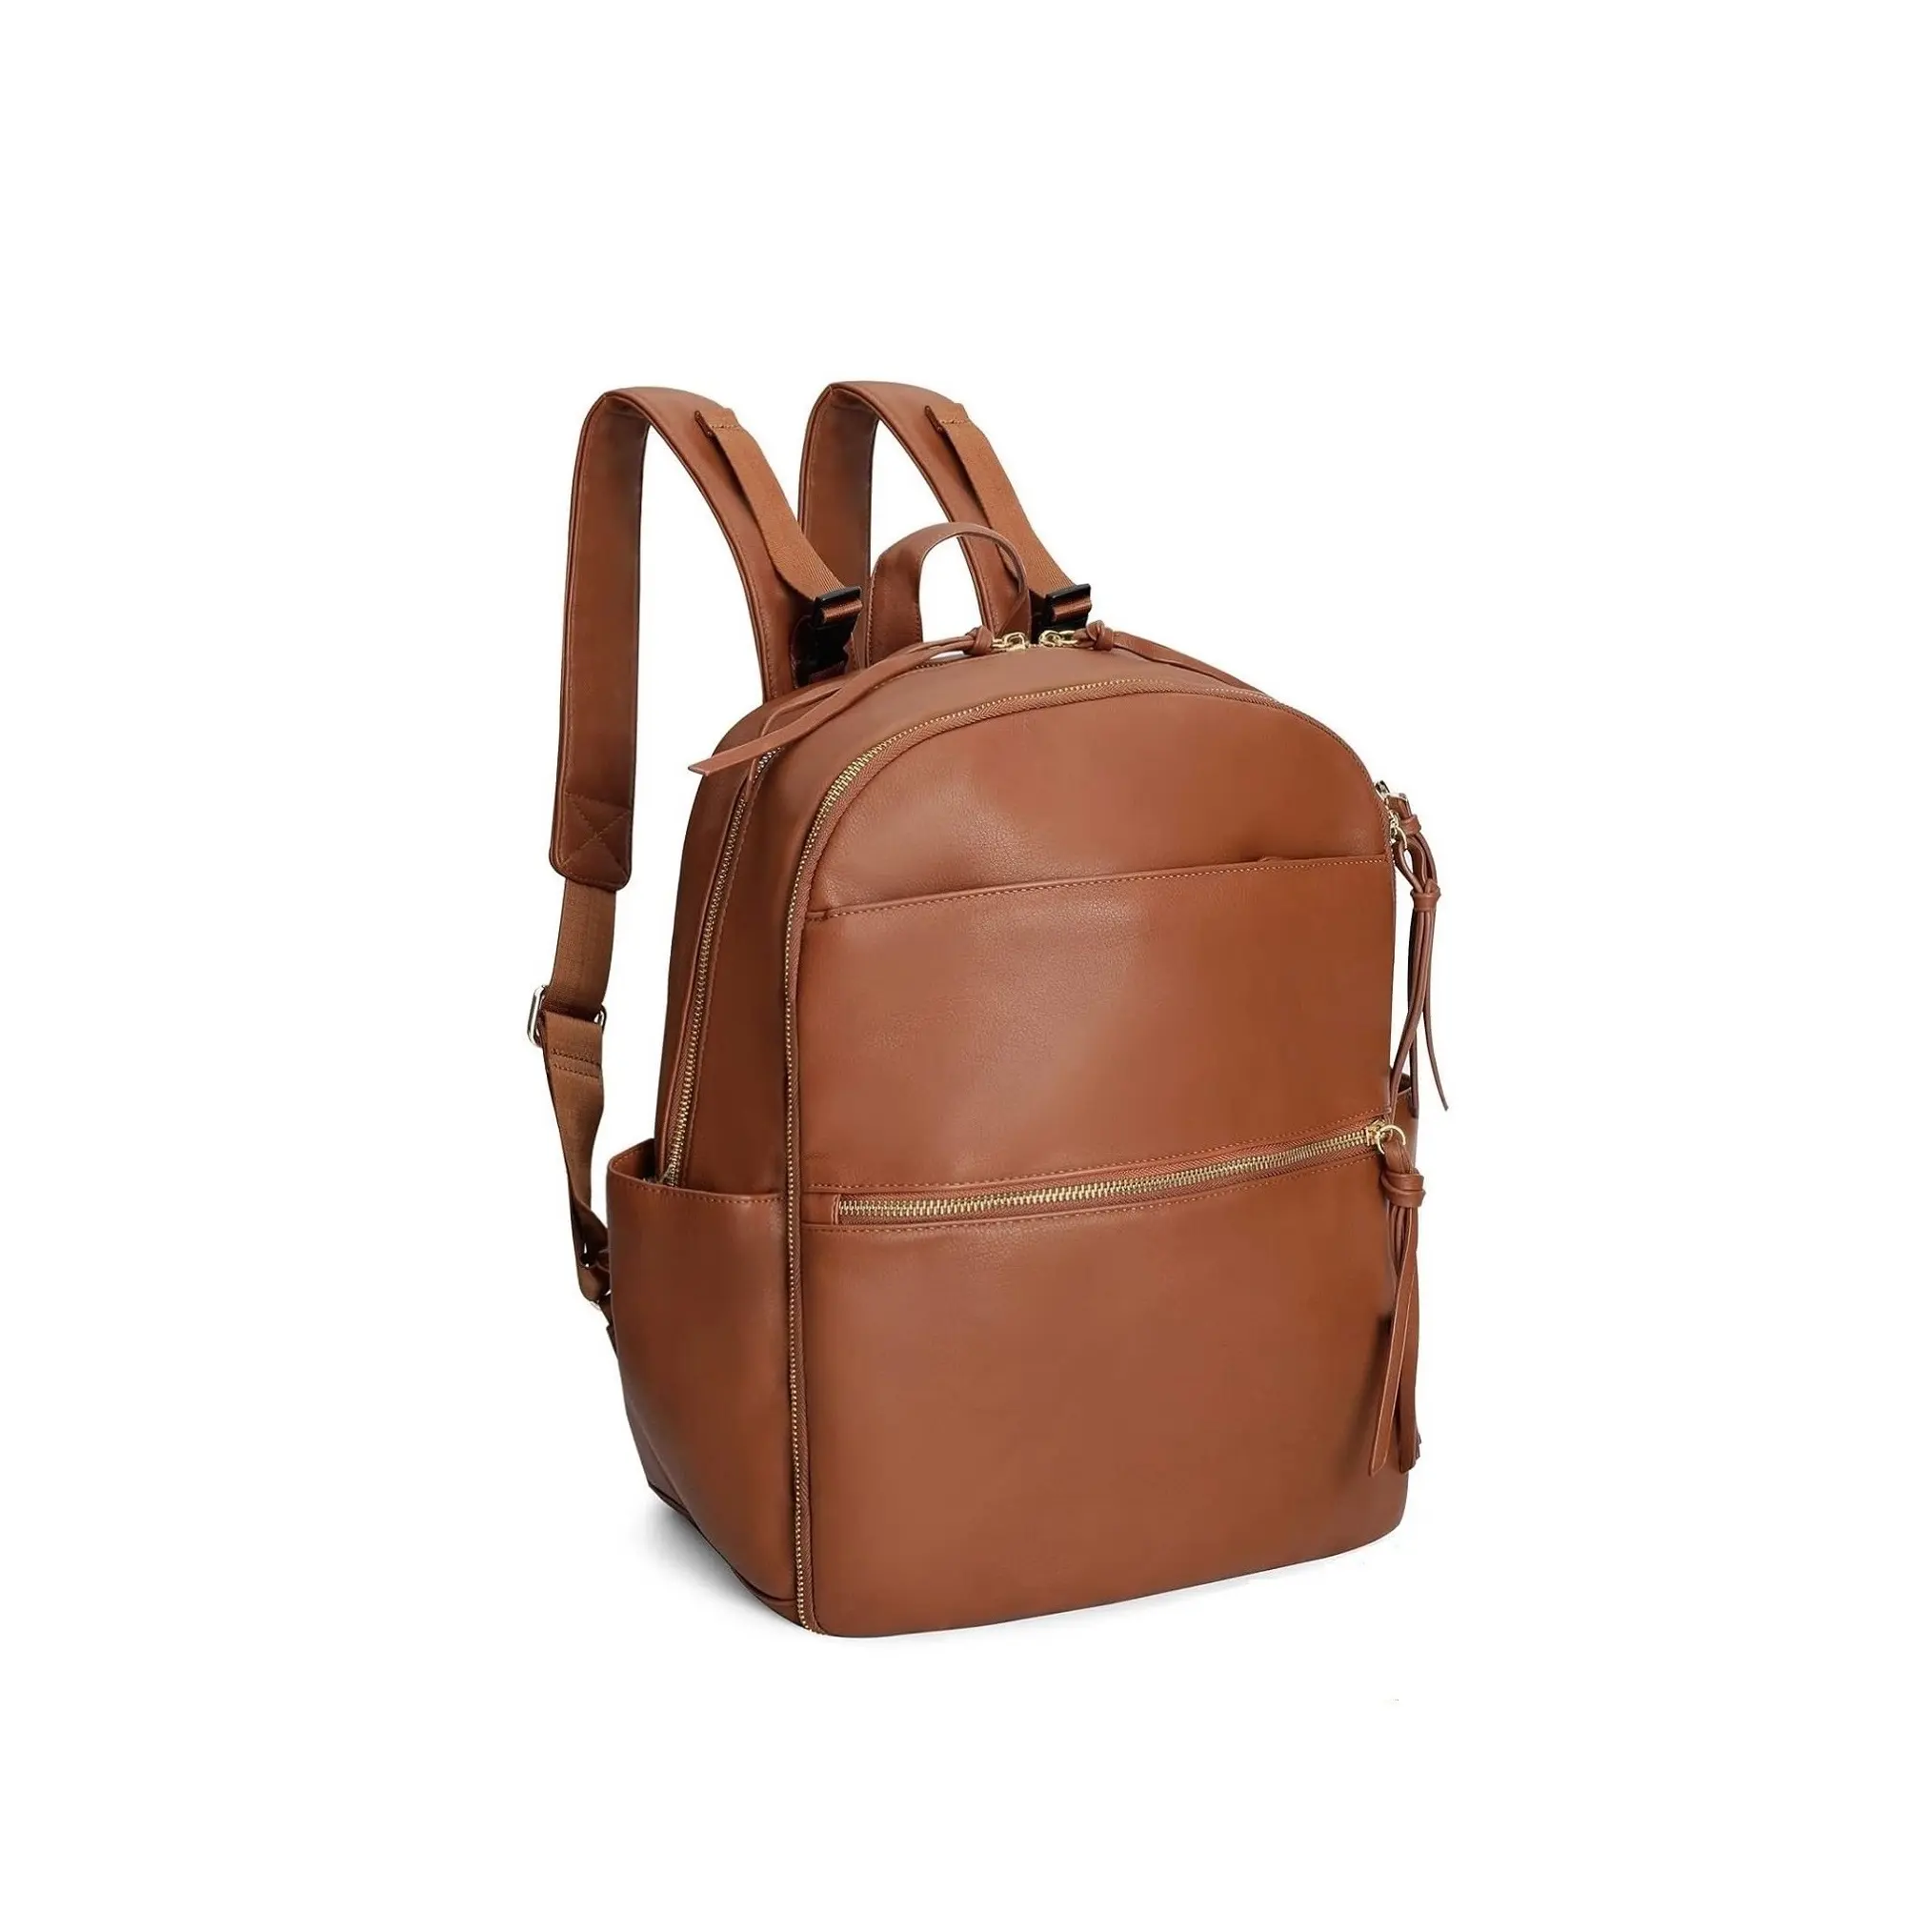 भारत से निर्यात बिक्री के लिए उच्च गुणवत्ता वाले मल्टीफ़ंक्शन उच्च गुणवत्ता वाले फैशन फोल्डेबल डायपर बैग माँ बैग